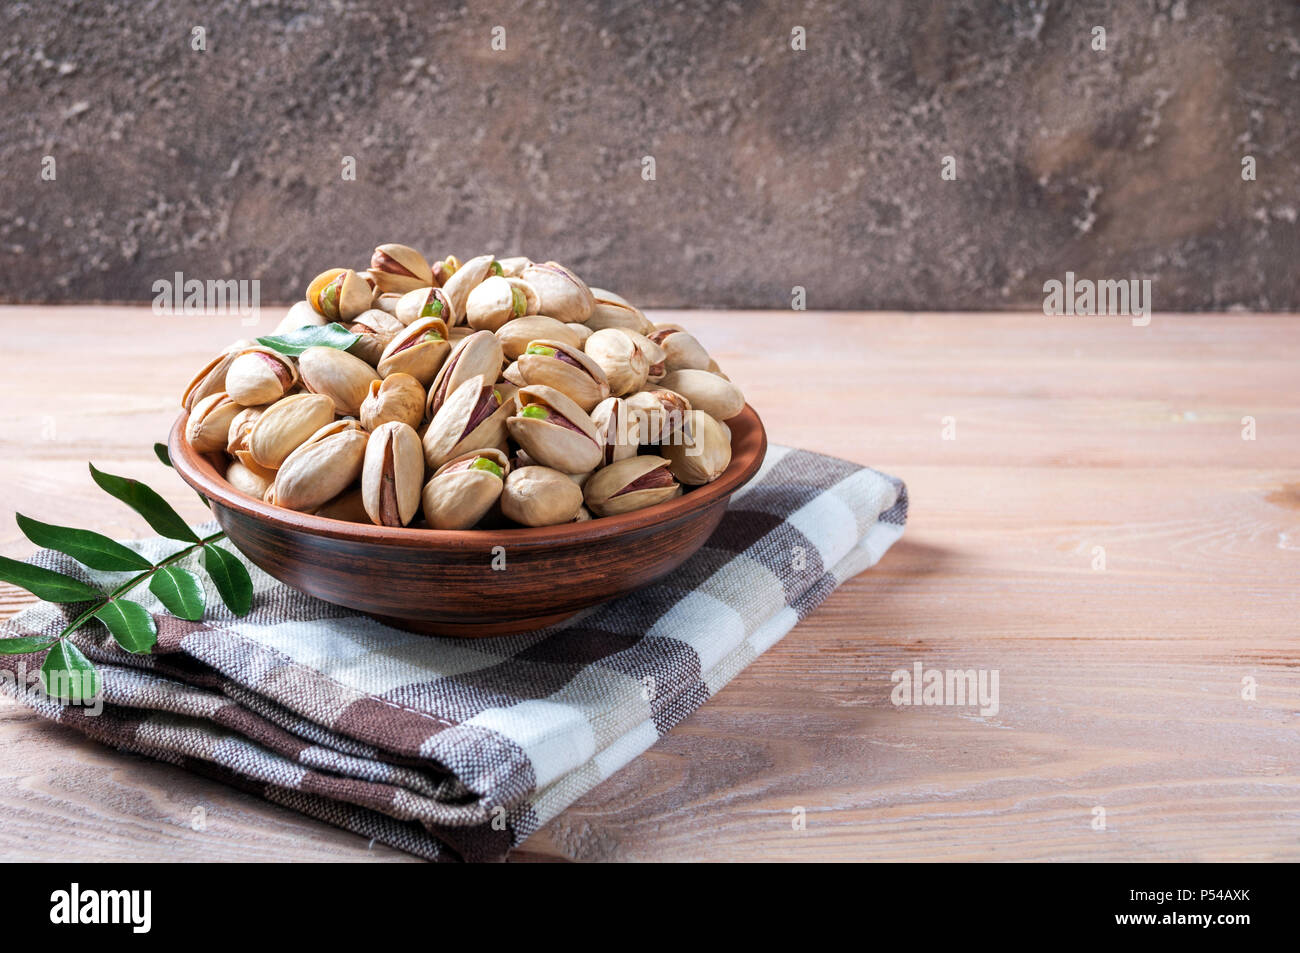 Pistacchi Noci in ciotola. Il pistacchio con foglie. Cibo sano, spuntini e cibo vegetariano. Spazio di copia Foto Stock